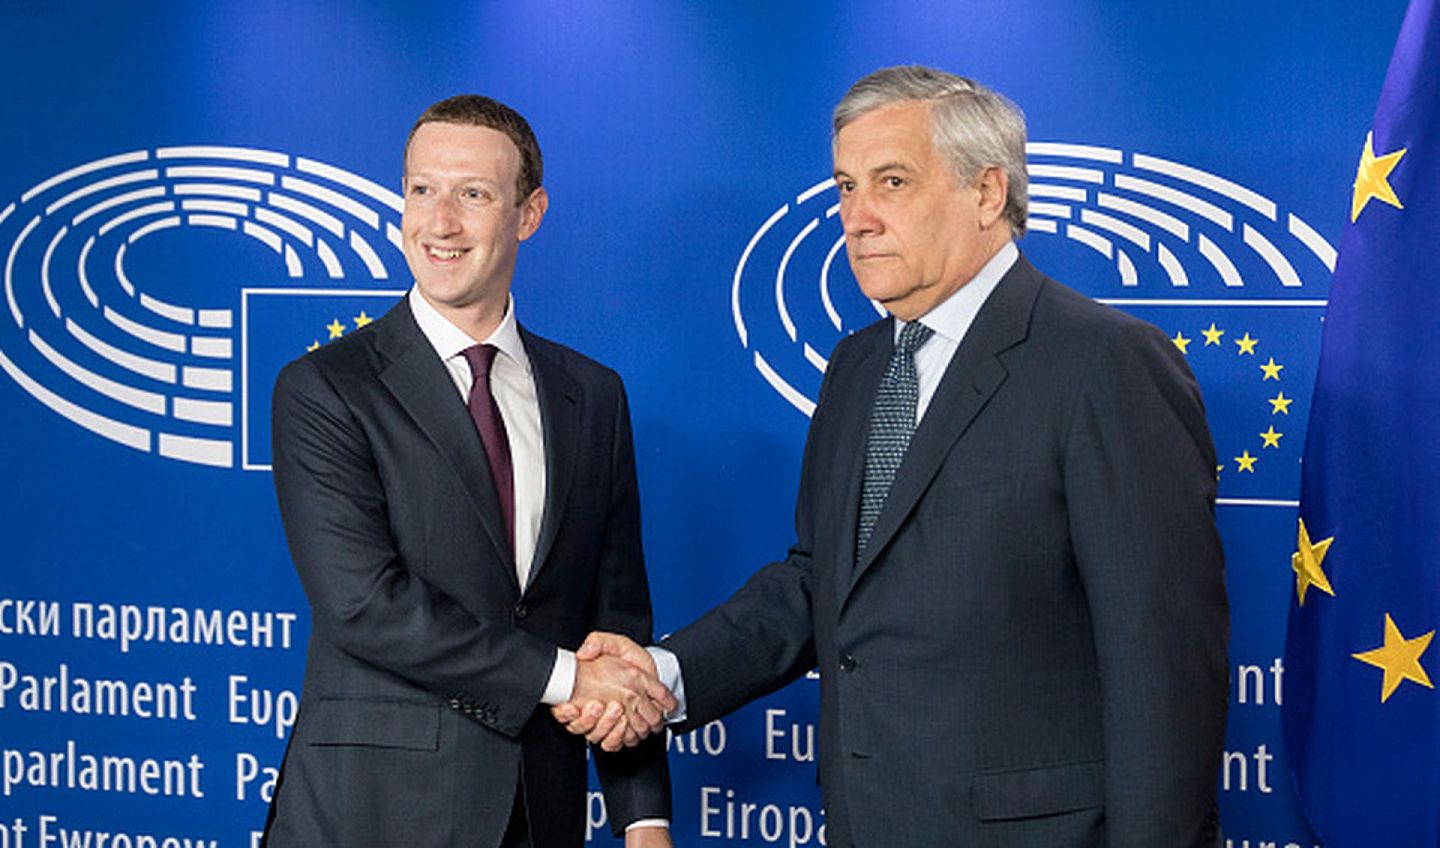 美国霸权法案甚至引起了盟友的反弹，图为2018年5月22日，时任欧洲议会议长塔扎尼（Antonio Tajani，右）在布鲁塞尔欧盟总部与到访的脸书创始人兼CEO扎克伯格（Mark Zuckerburg，左）握手致意。当天，应欧盟方面要求，扎克伯格本人亲赴欧洲议会参加有关脸书泄露用户信息调查案的听证会，并接受相关质询。（Getty Images）